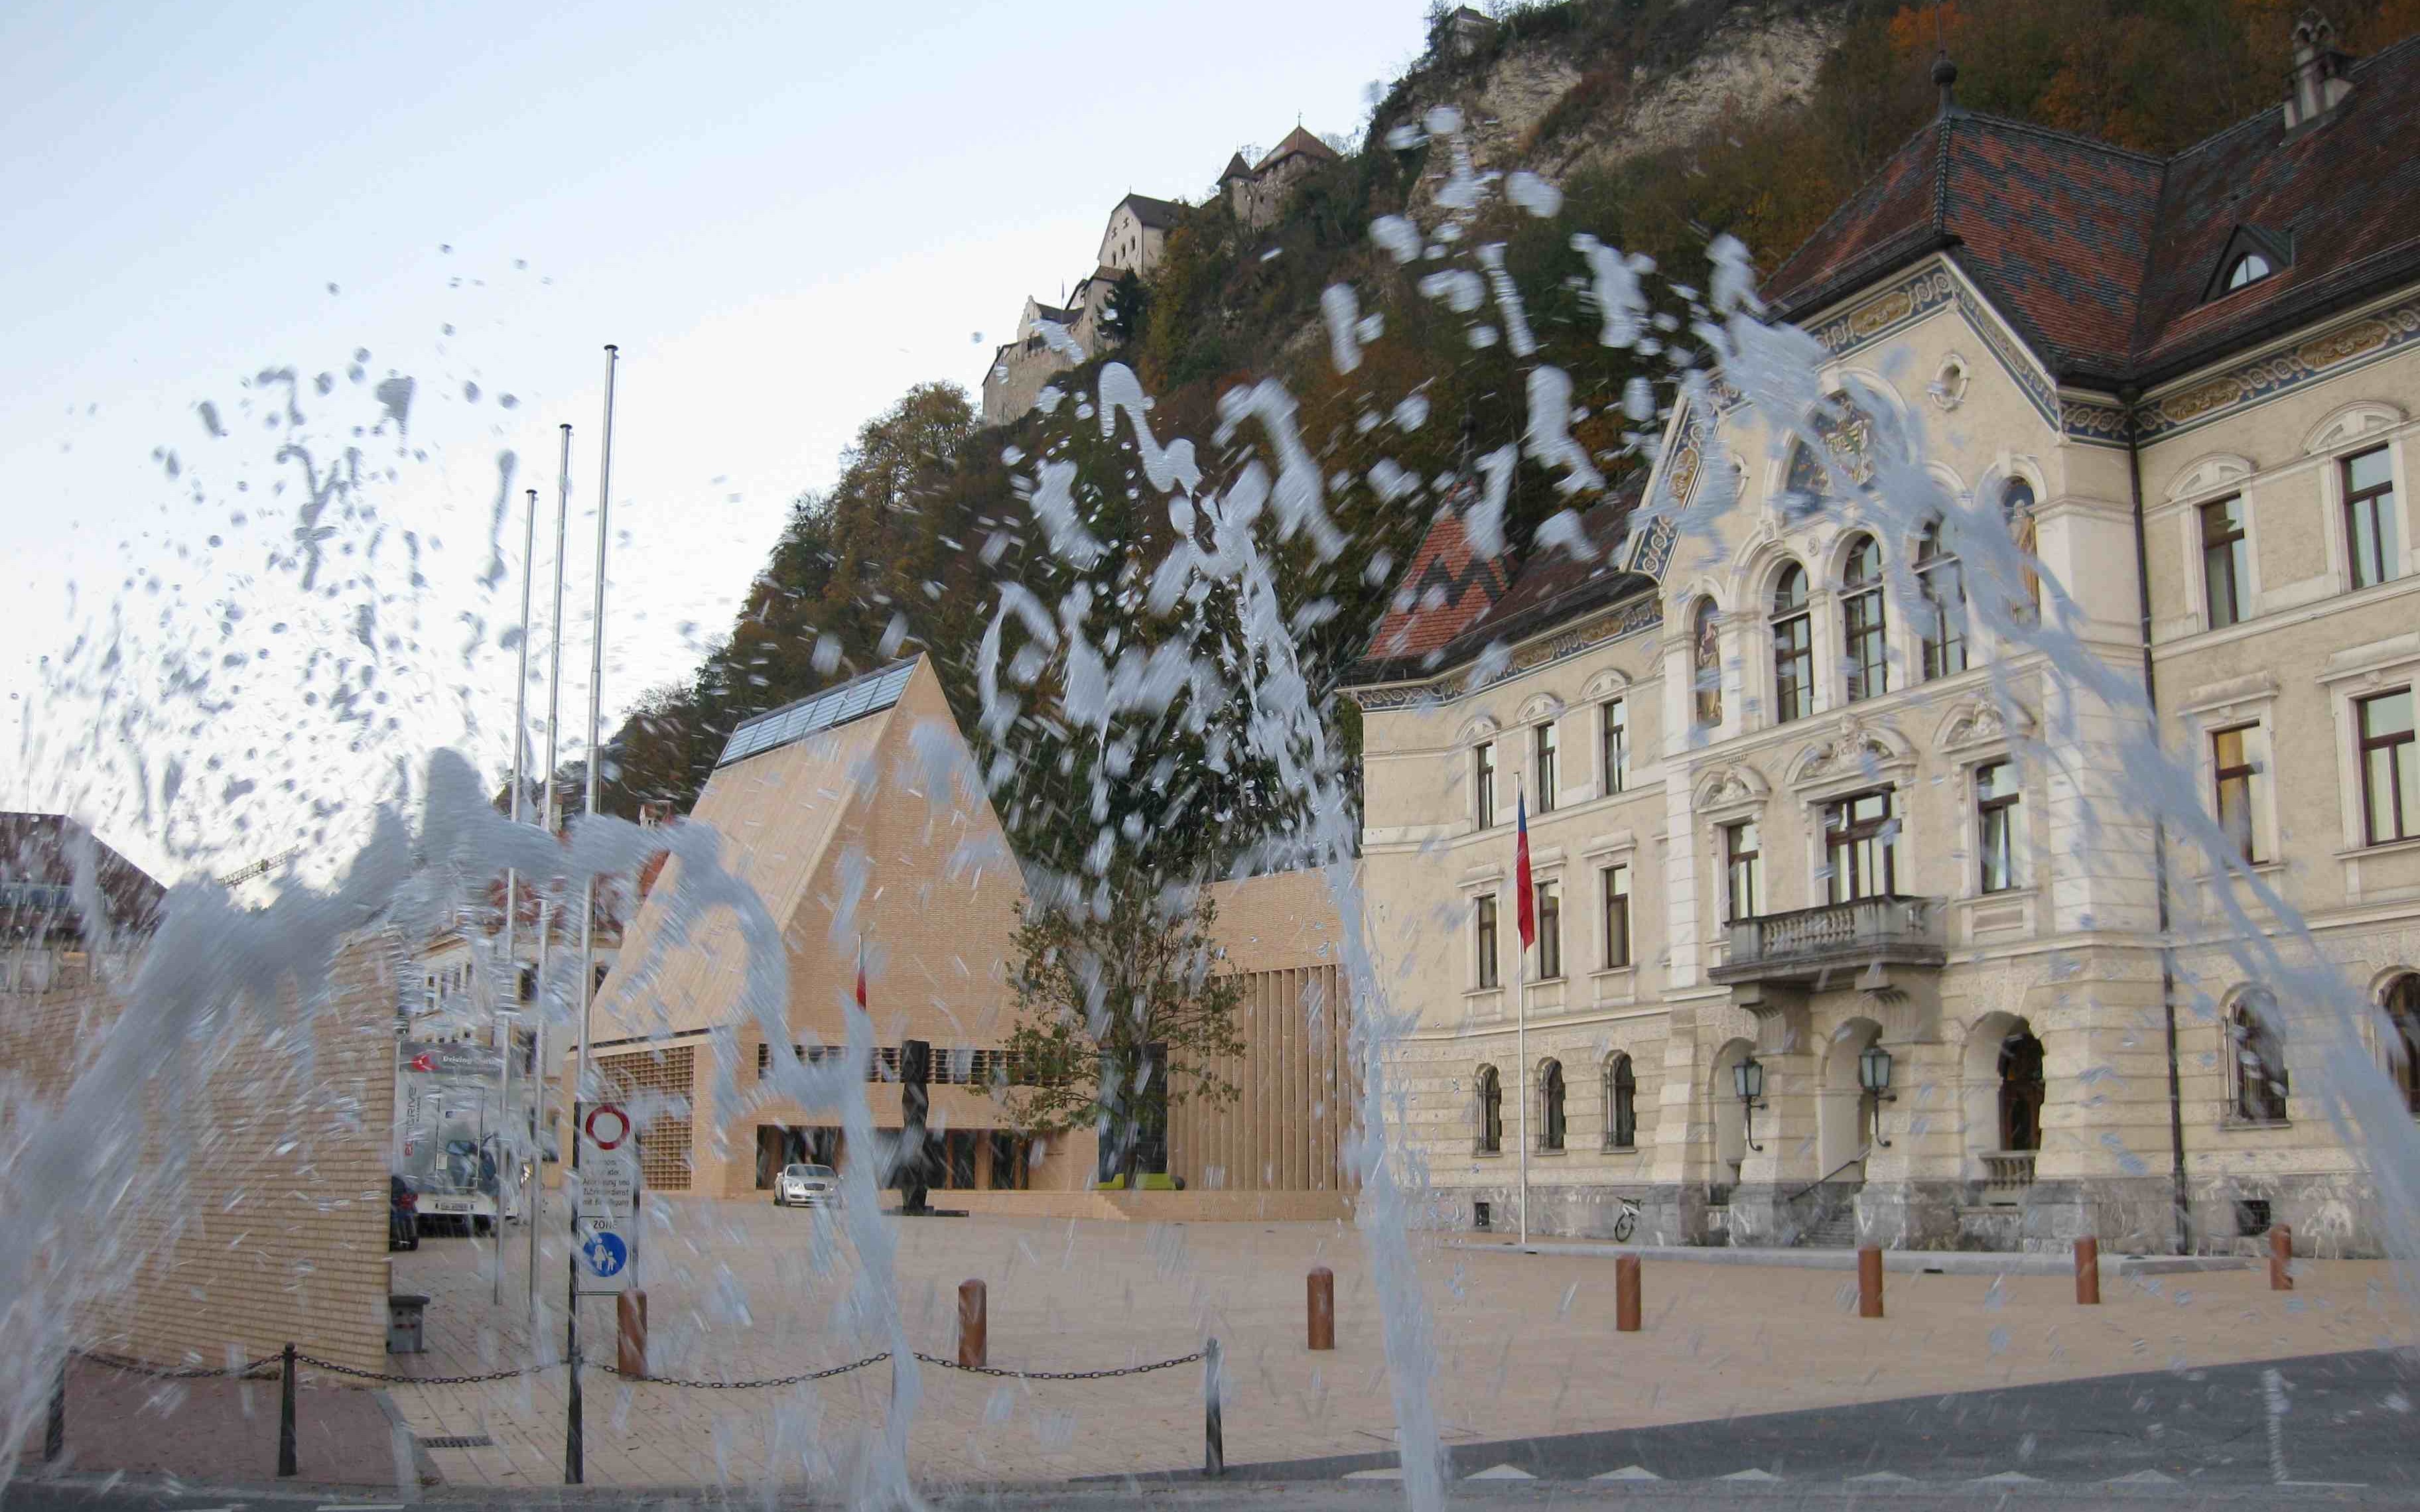 Government building, parliament and castle in Vaduz, Liechtenstein